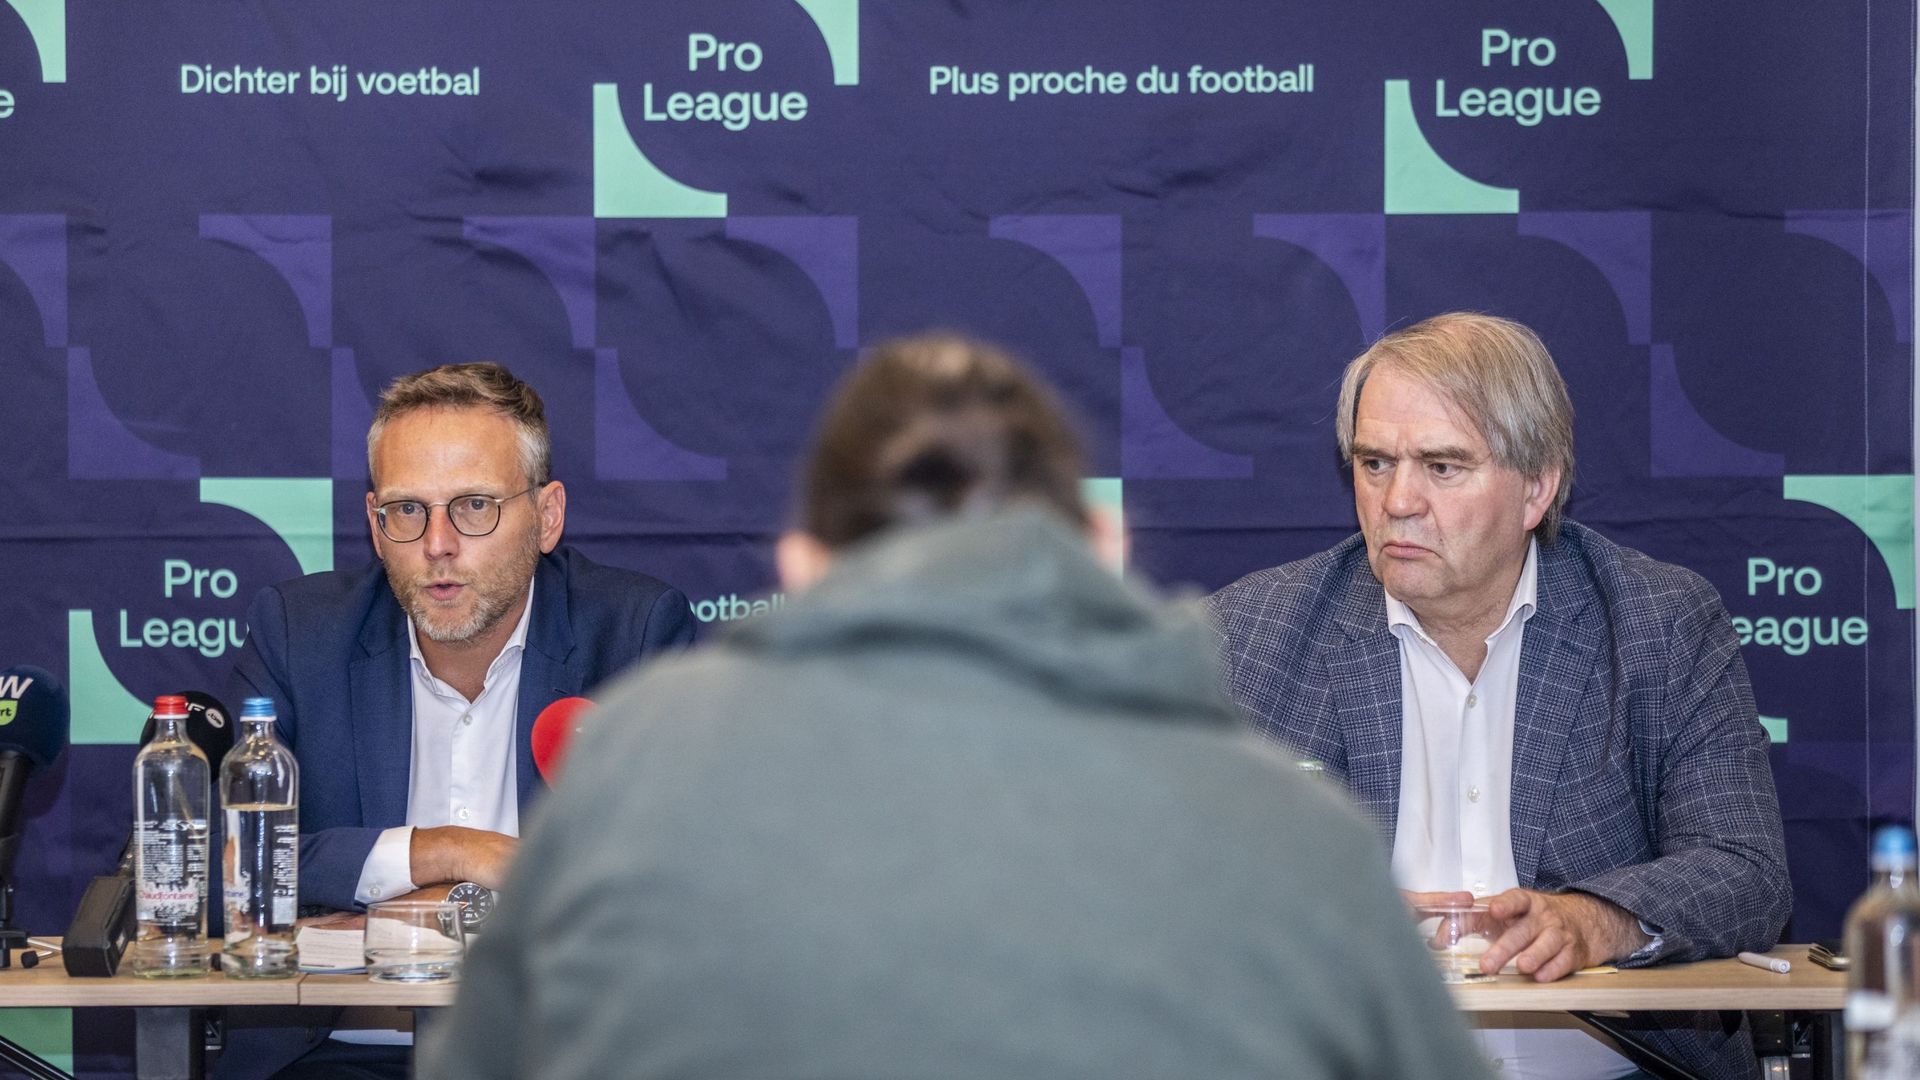  Peter Croonen, président de la Pro League et Pierre Francois, CEO de la Pro League au pied du mur 